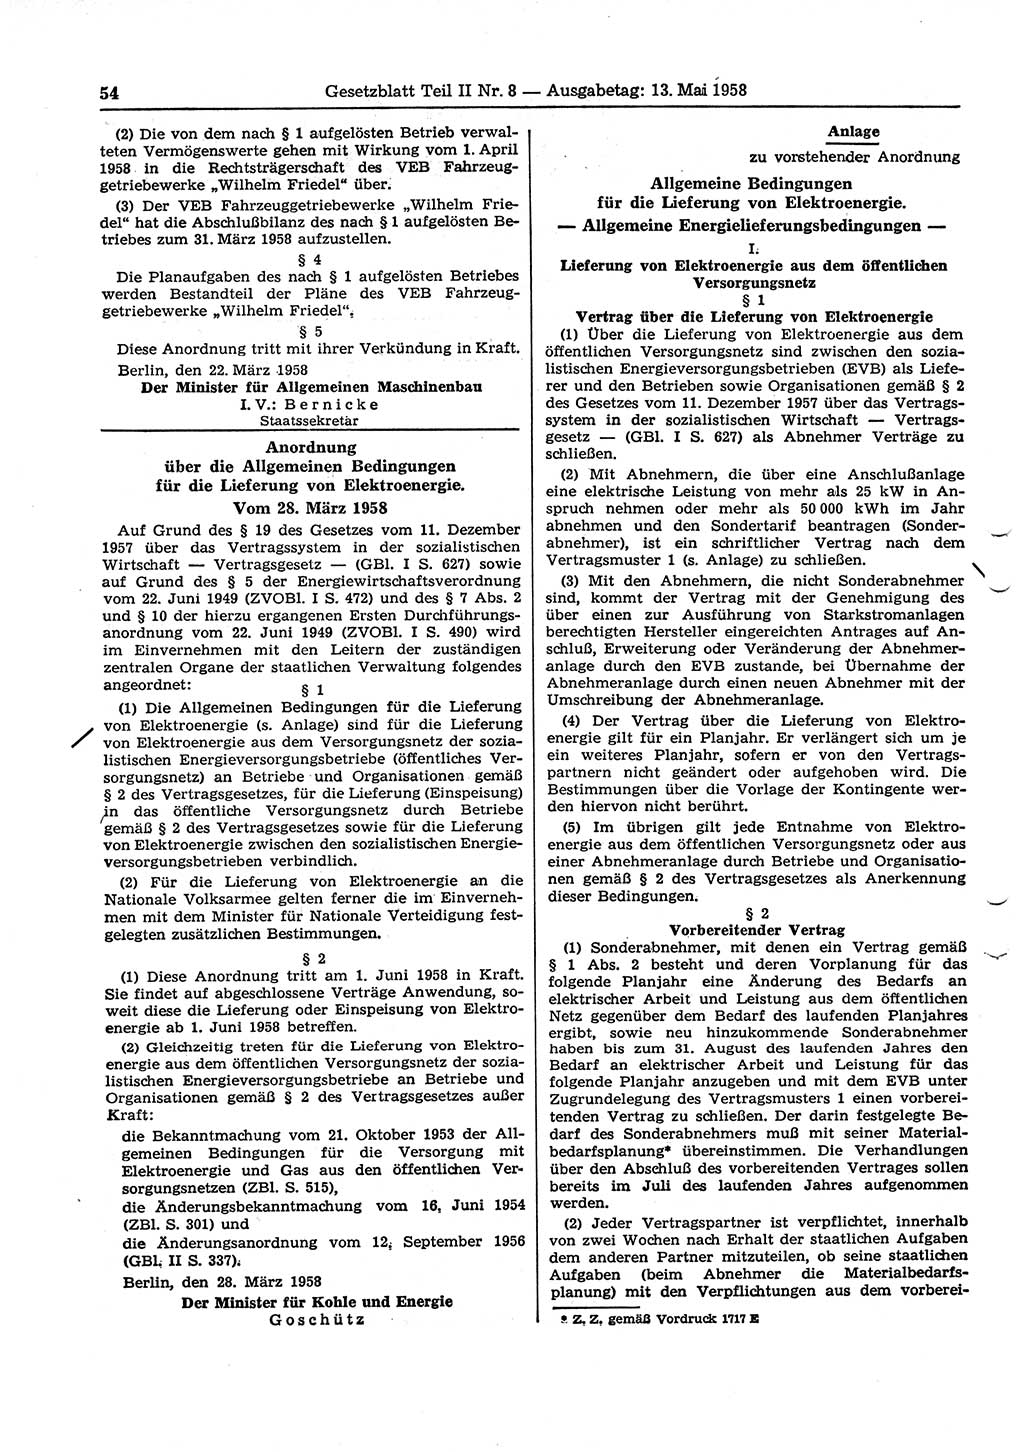 Gesetzblatt (GBl.) der Deutschen Demokratischen Republik (DDR) Teil ⅠⅠ 1958, Seite 54 (GBl. DDR ⅠⅠ 1958, S. 54)